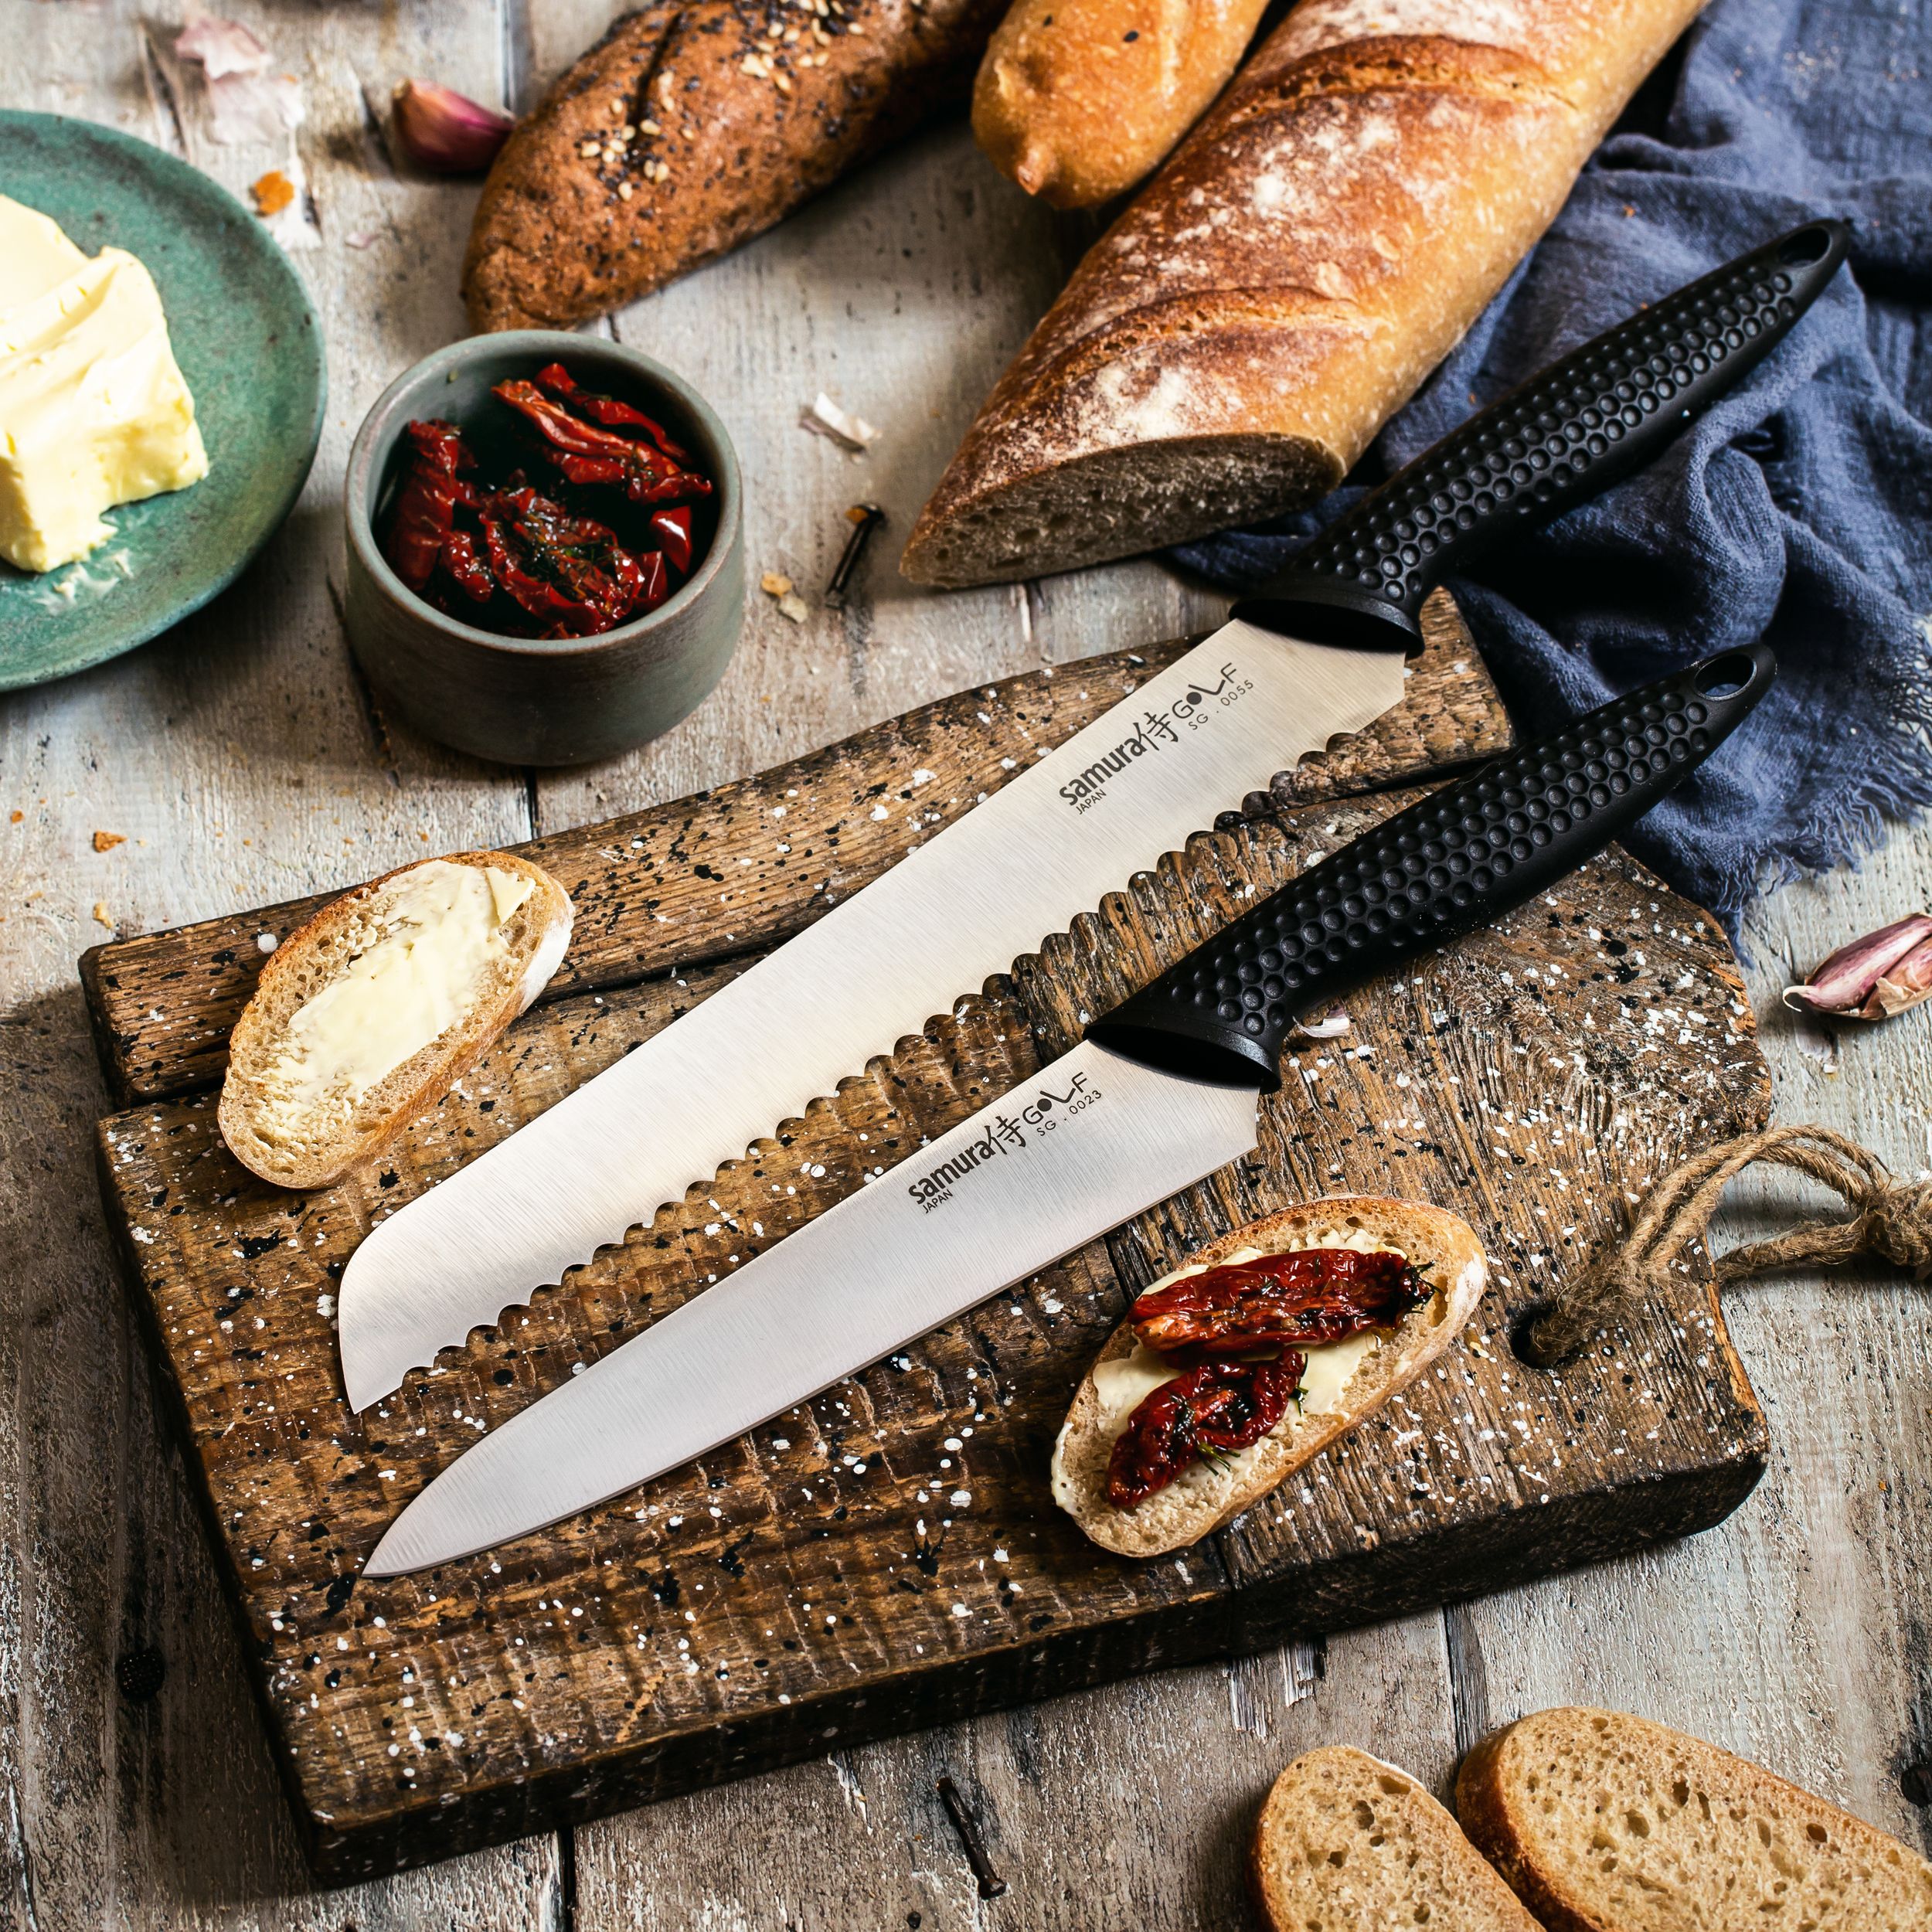 Купить набор ножей для кухни в Минске, комплекты ножей